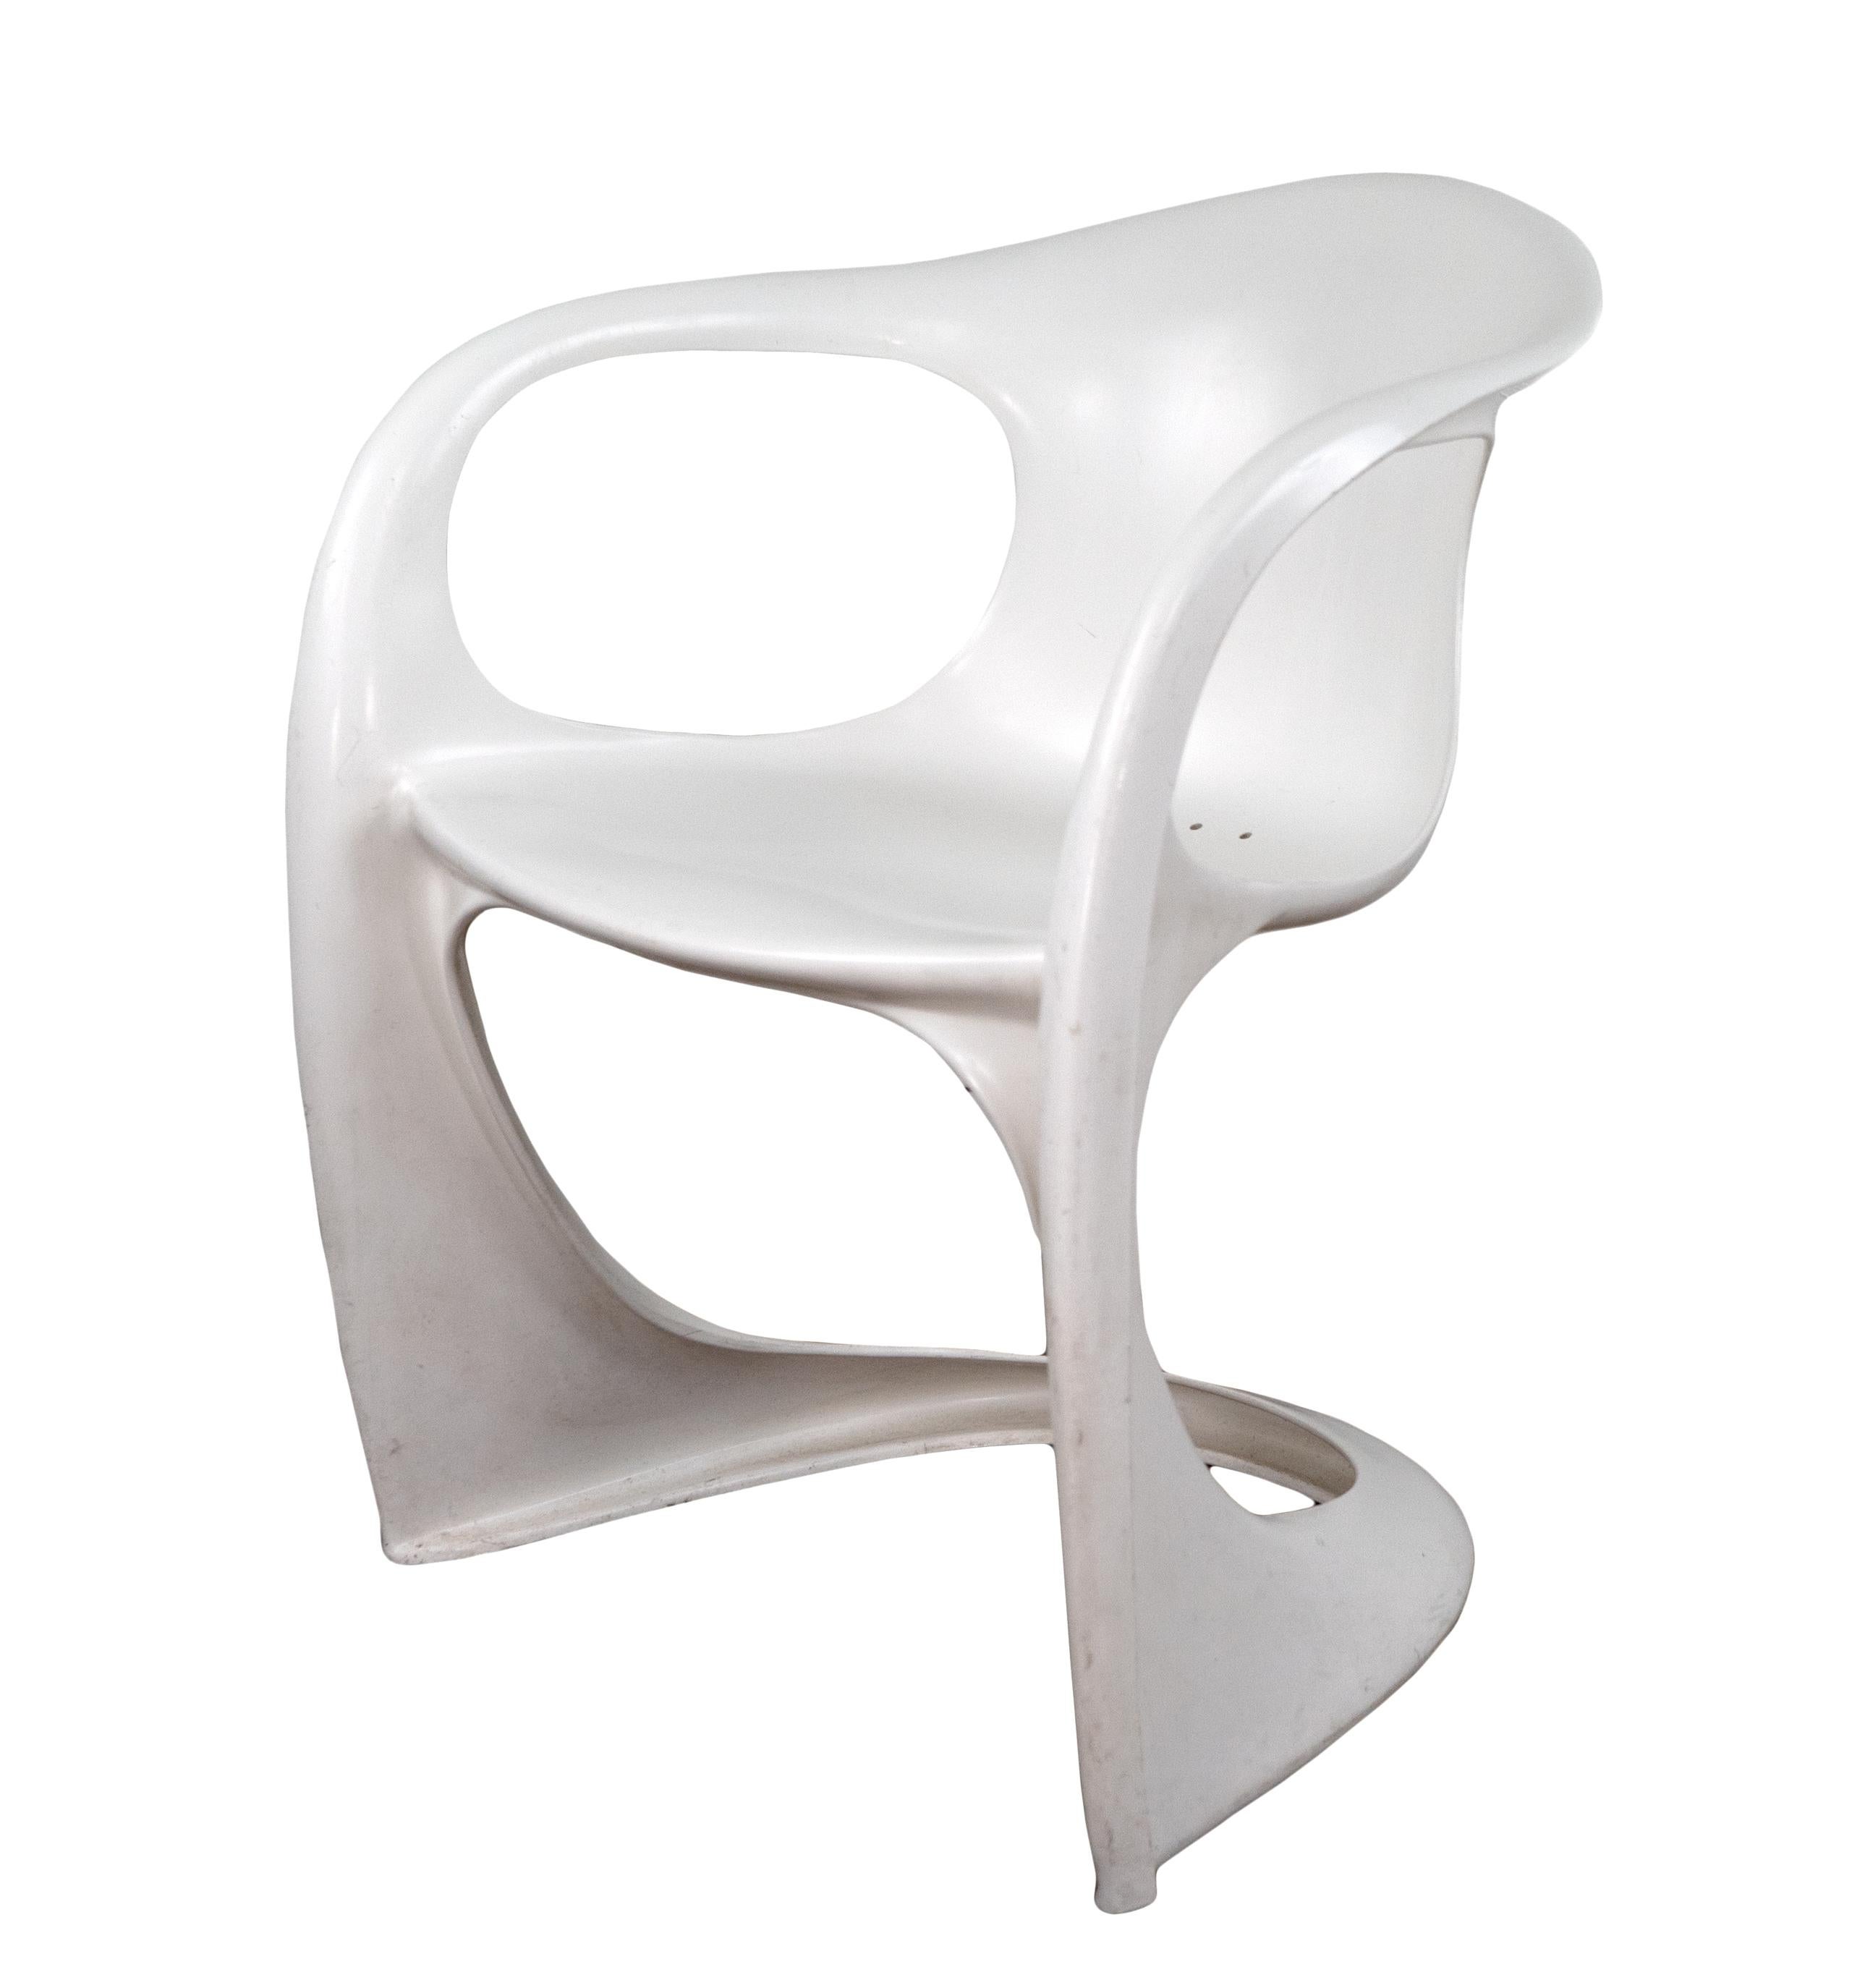 Ein geformter, skulpturaler, weicher, weißer Casalino-Stuhl, der aus automobilfestem Kunststoff hergestellt ist. Ein großartiges Design aus den 1970er Jahren aus der POP-Art-Periode von Alexander Begge, das manchmal auch als Begge-Stuhl bezeichnet